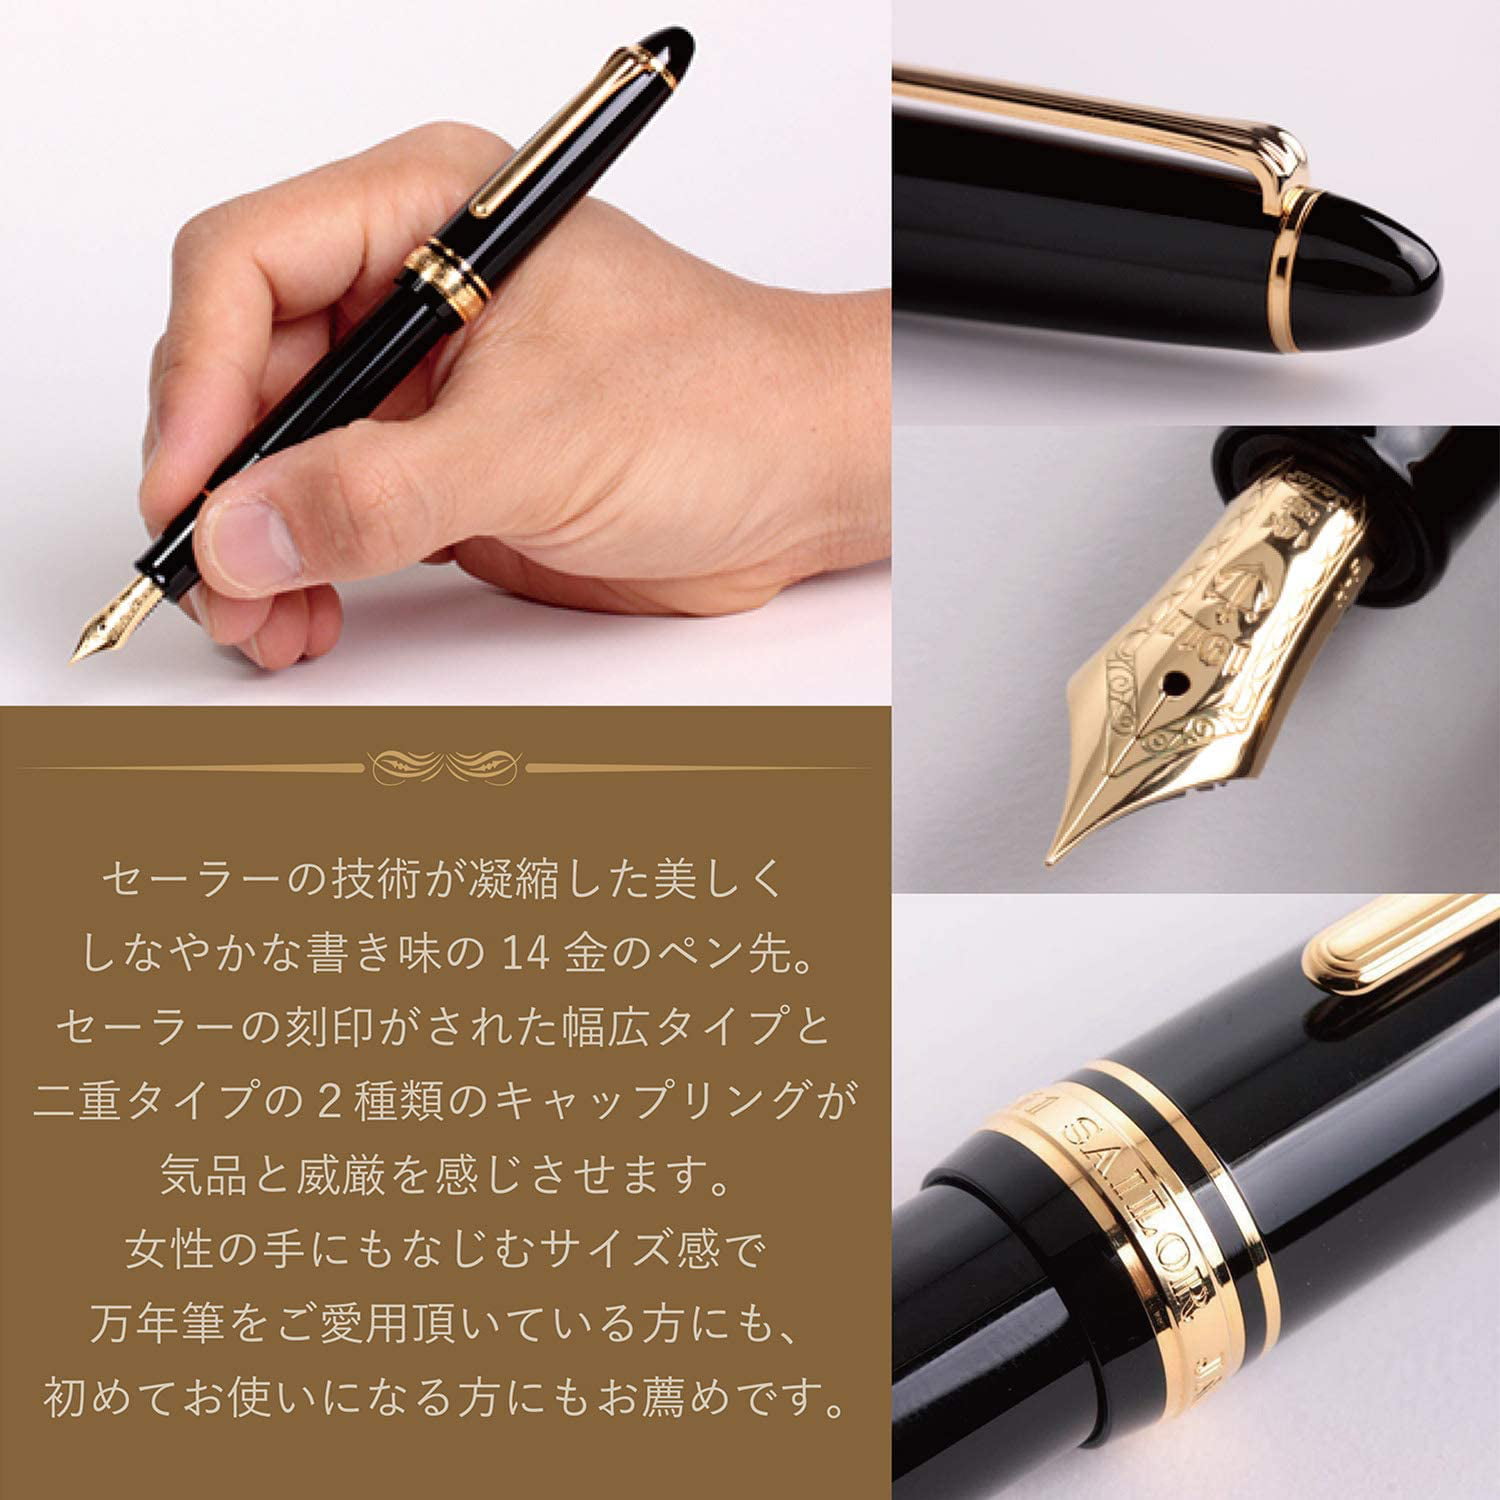 Sailor Profit Standard 21 Fountain Pen Medium Fine Black Body 11-2021-320 